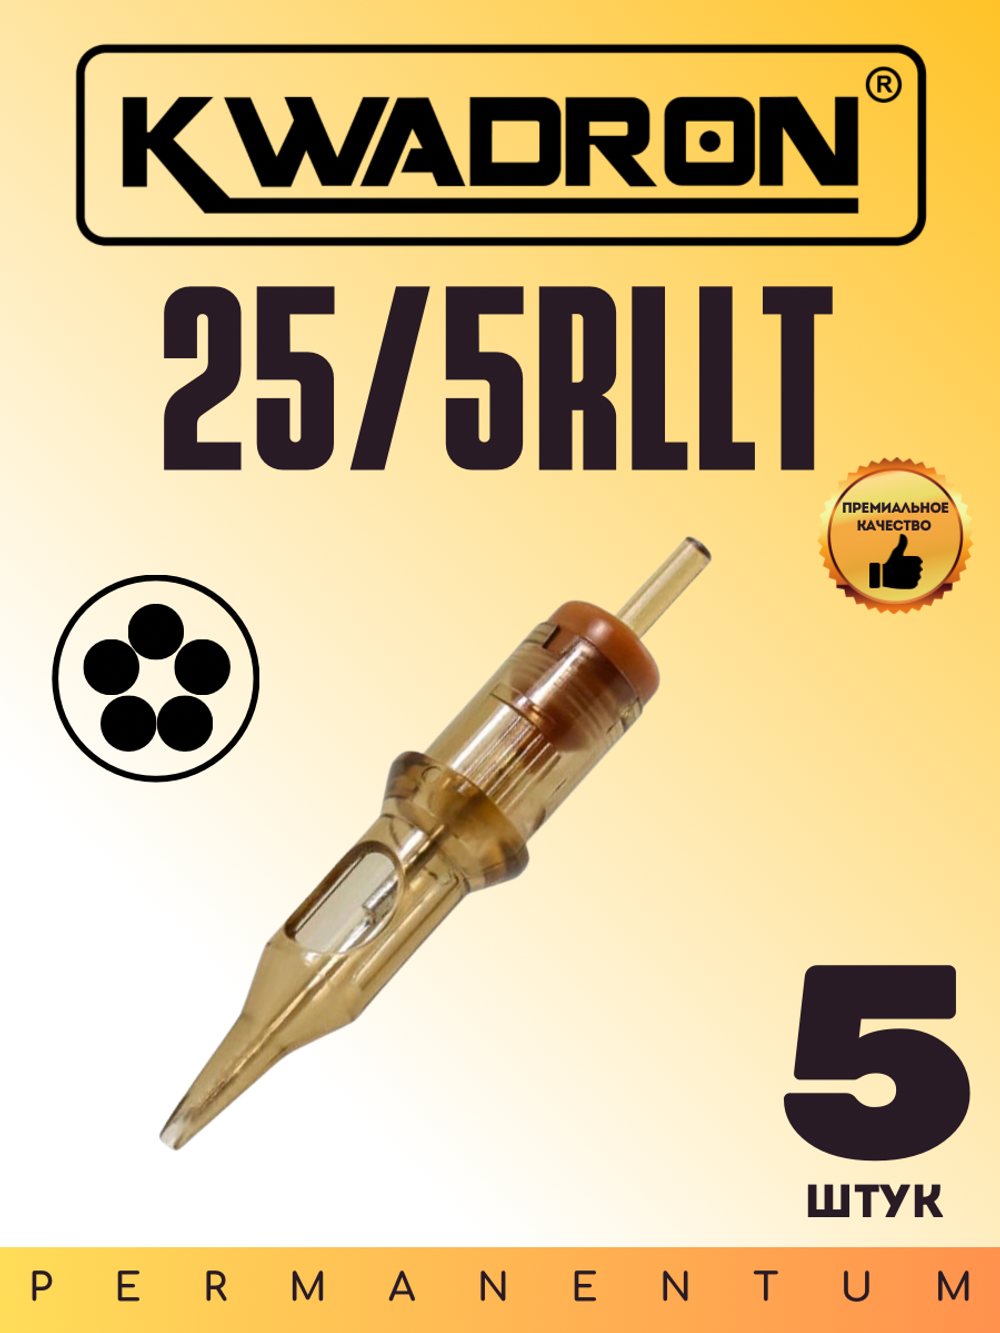 Картридж для татуажа "KWADRON Round Liner 25/5RLLT" блистер 5 шт.